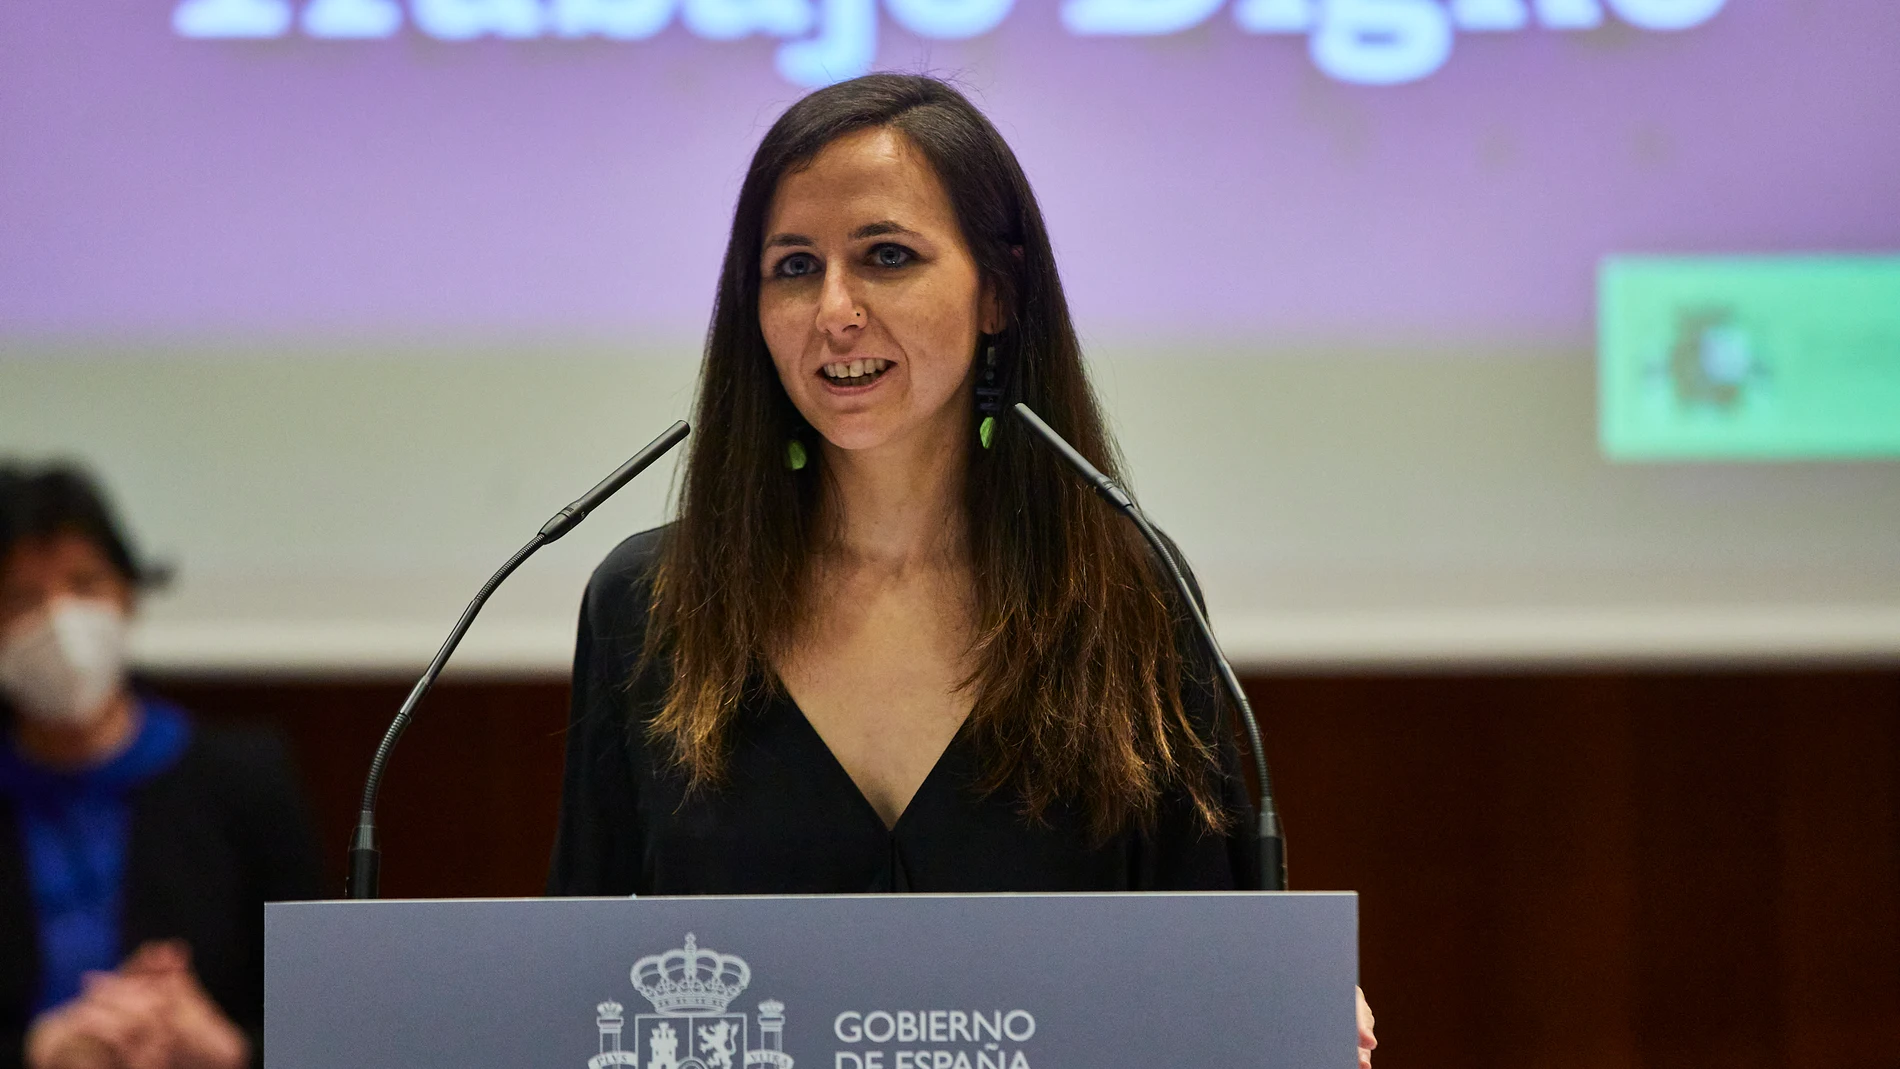 La nueva ministra de Derechos Sociales y Agenda 2030, Ione Belarra; interviene durante el traspaso de carteras ministeriales, en Madrid (España)